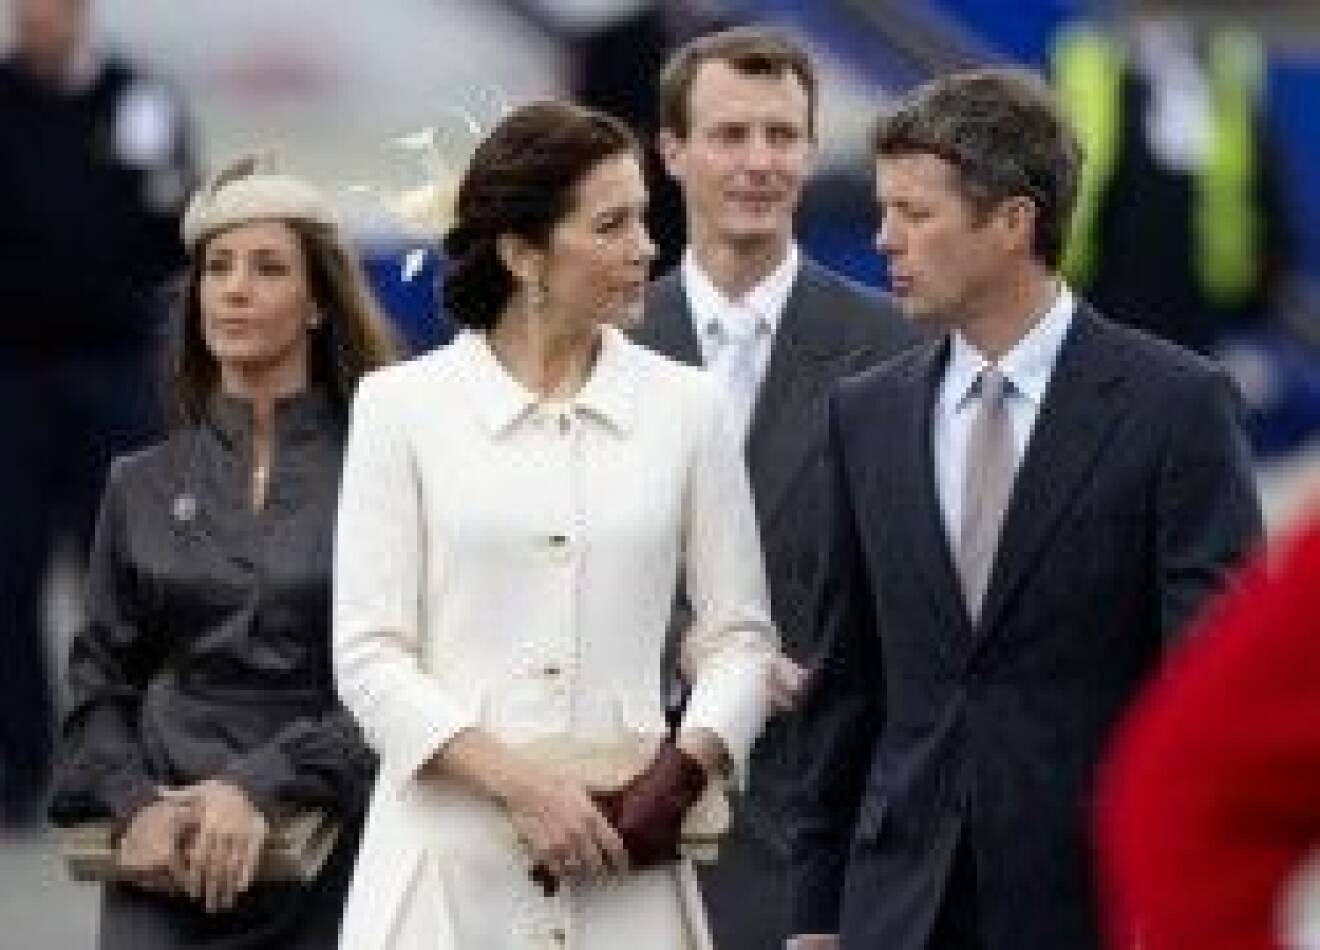 Här har vi de danska prinsarna med sina respektive hustrur.